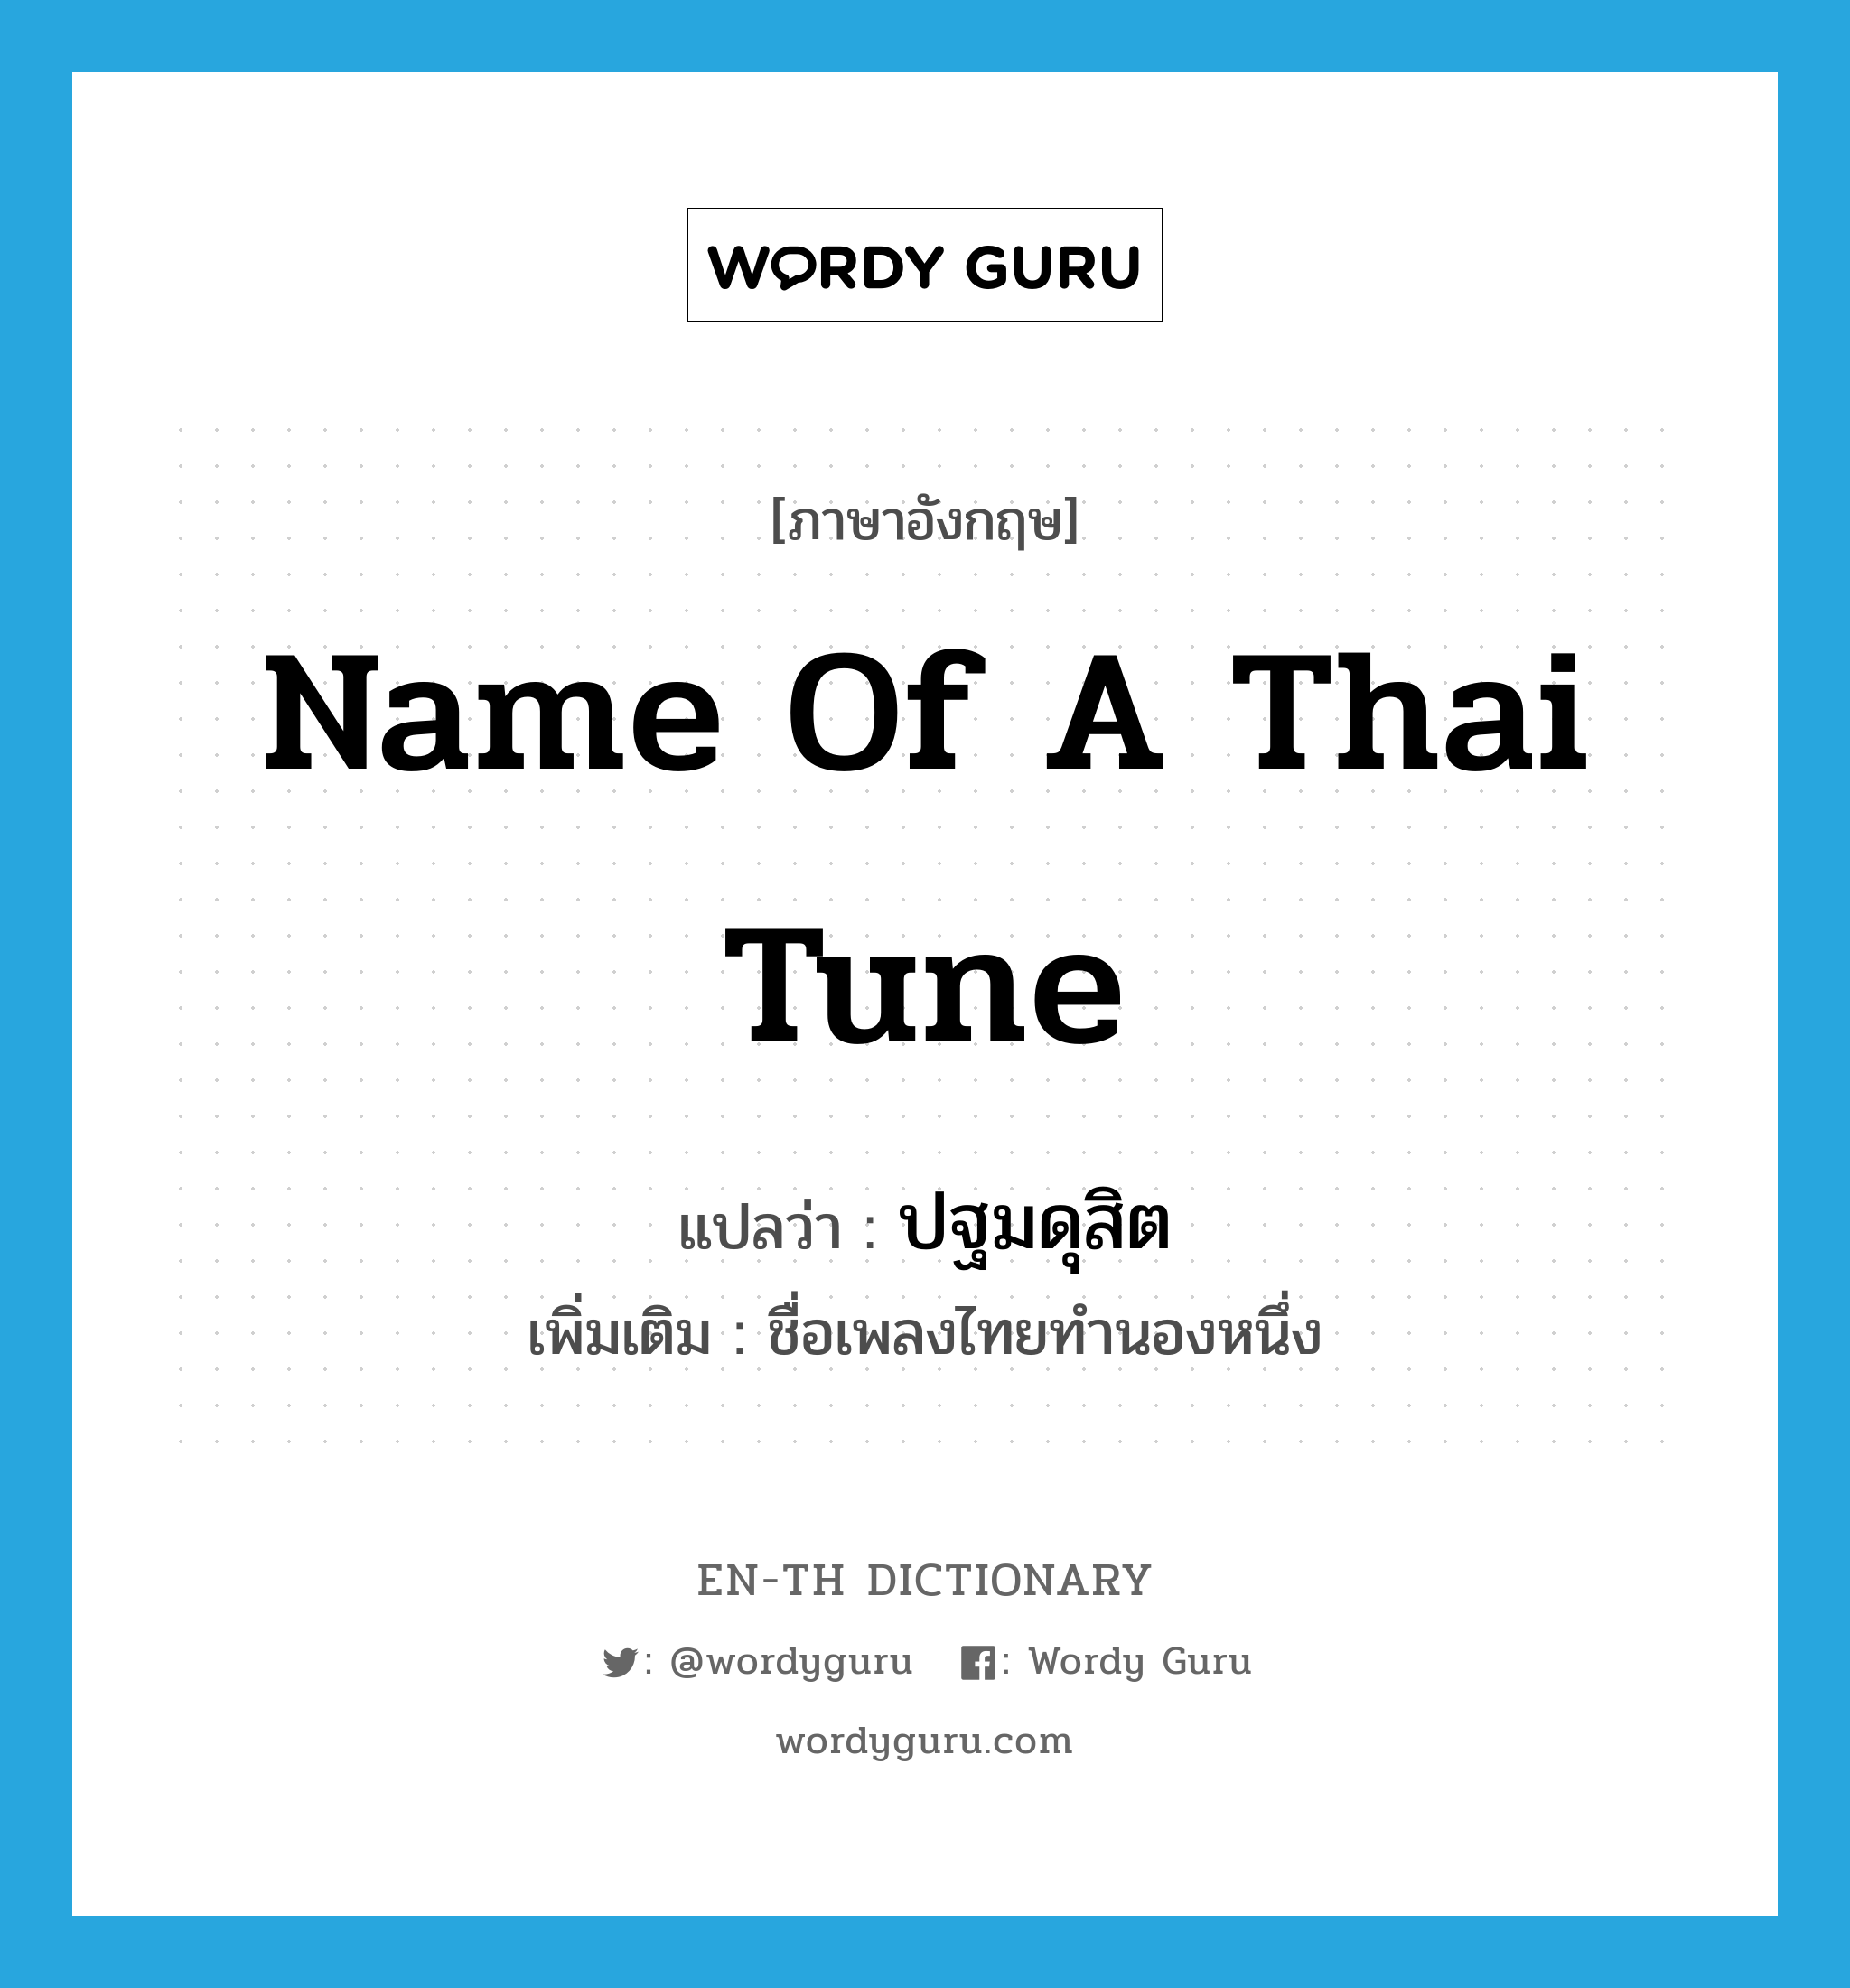 name of a Thai tune แปลว่า?, คำศัพท์ภาษาอังกฤษ name of a Thai tune แปลว่า ปฐมดุสิต ประเภท N เพิ่มเติม ชื่อเพลงไทยทำนองหนึ่ง หมวด N